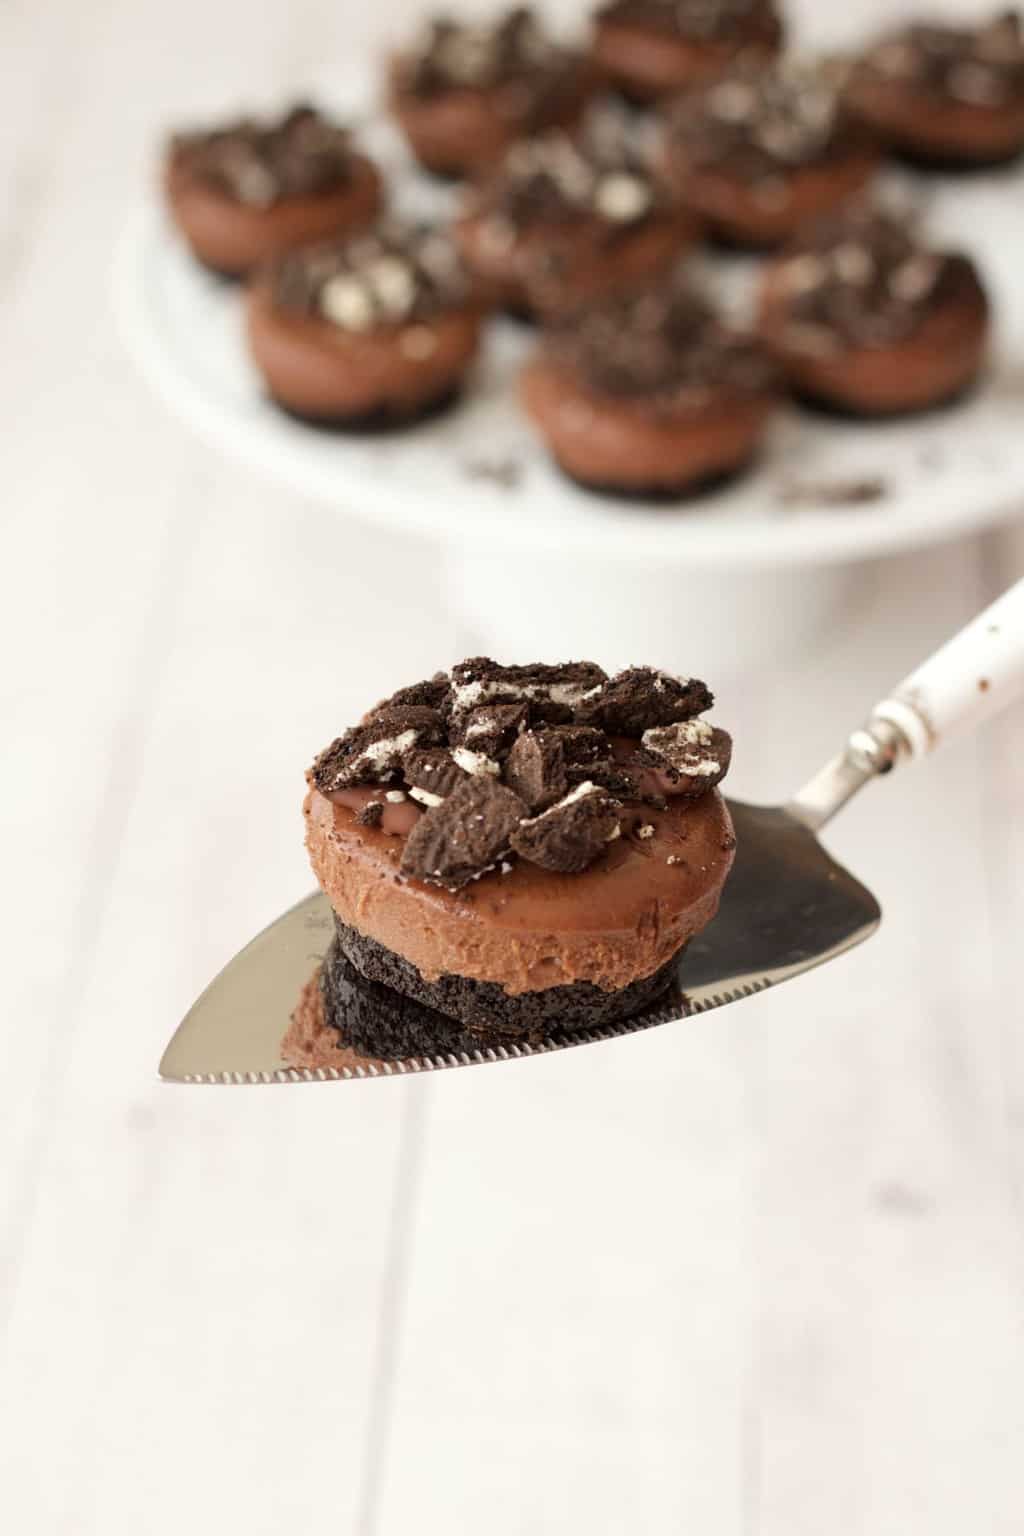 Mini Vegan Chocolate Cheesecakes #vegan #lovingitvegan #cheesecakes #dairyfree #Oreot